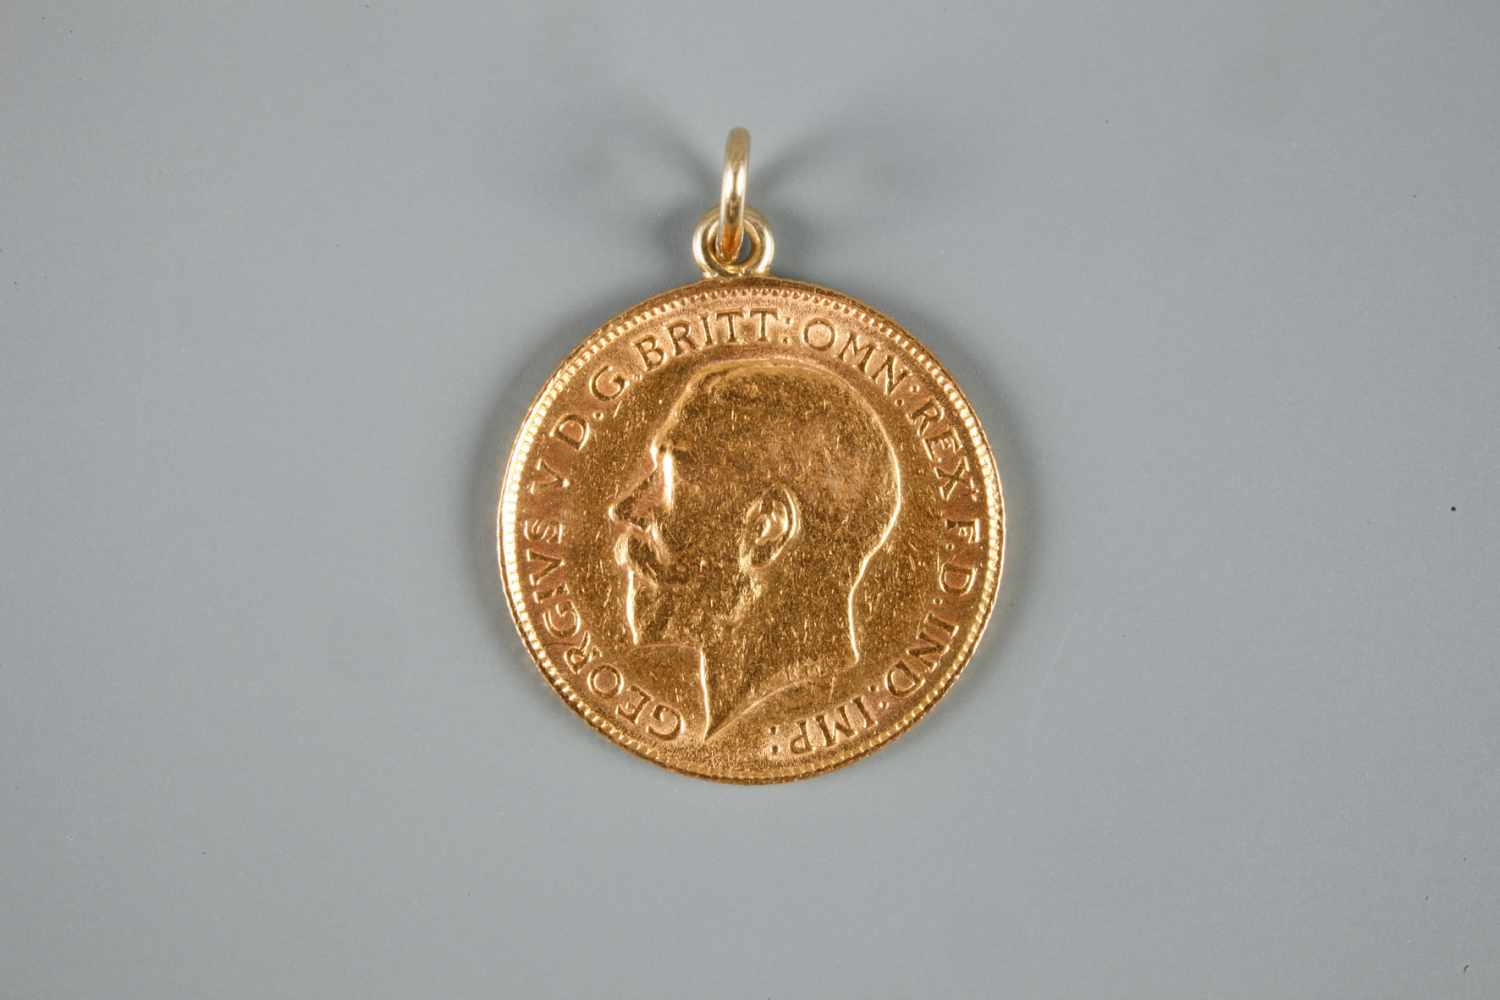 1/2 Sovereign gehenkelt Großbritannien 1914, 916er Gold, ss, G ges. mit Henkel (dieser ungeprüft) - Image 2 of 3